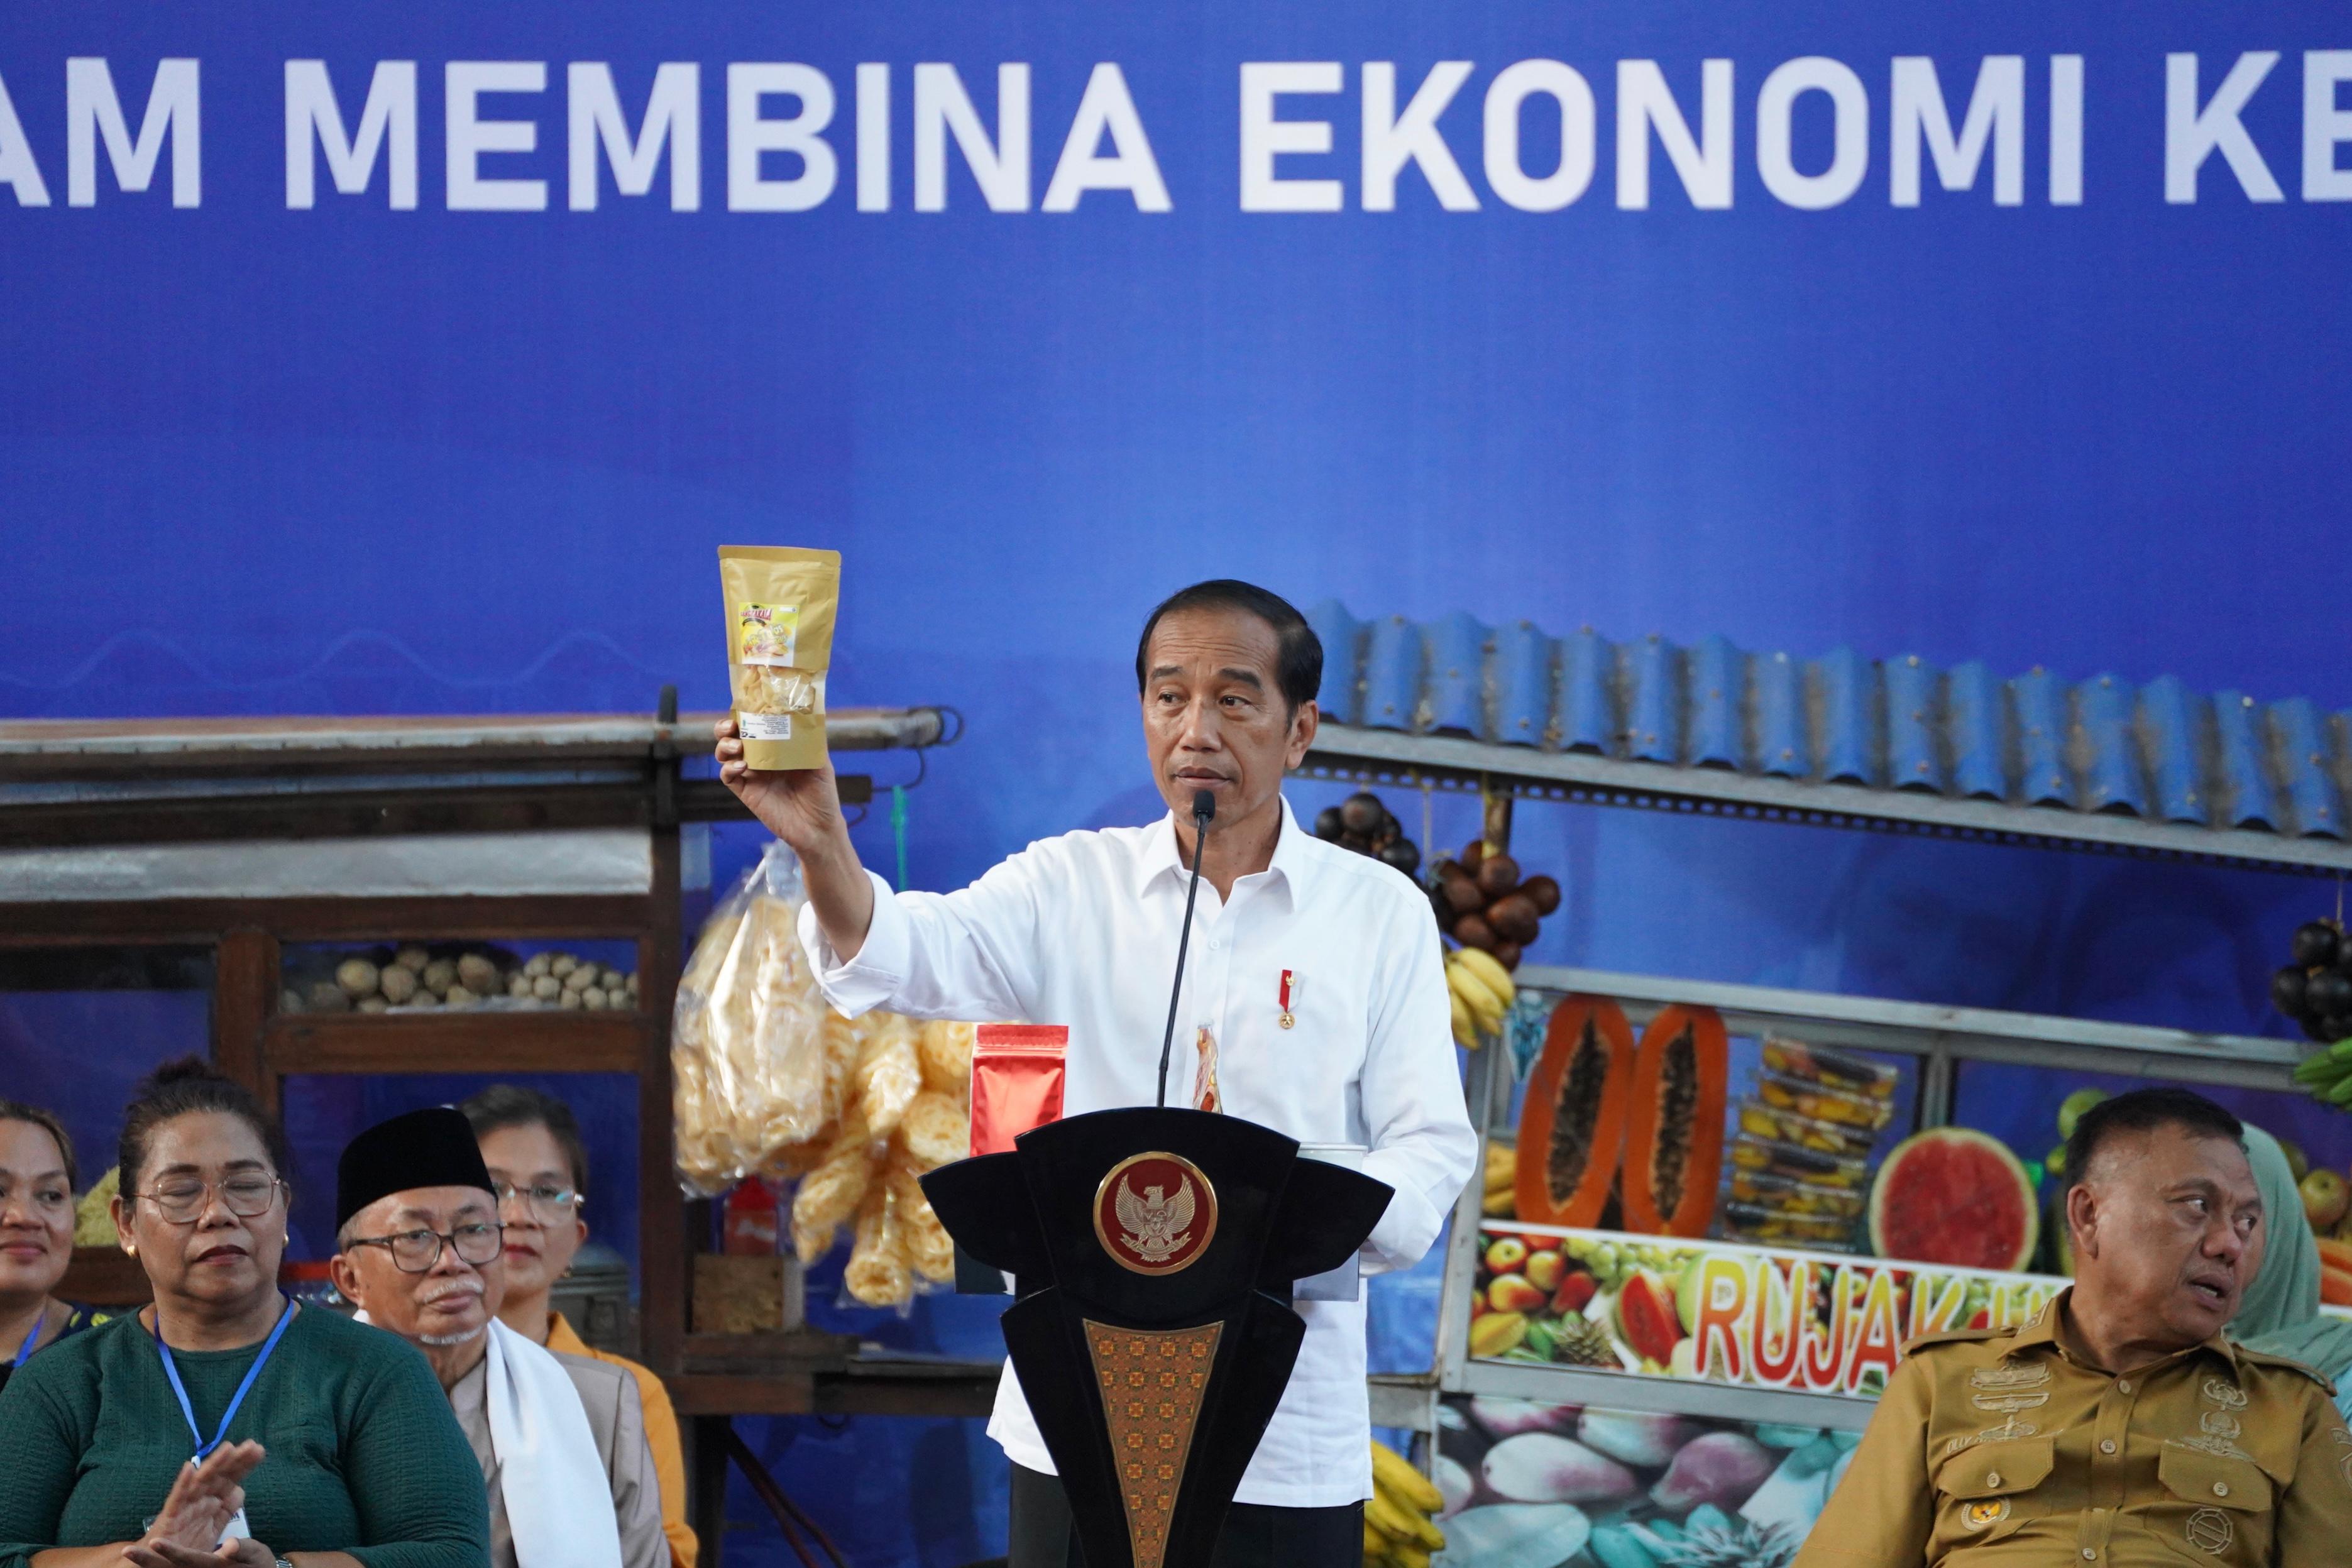 Bikin Nama Produk dengan Nama Anaknya, Nasabah Mekaar Ini Dipuji Jokowi